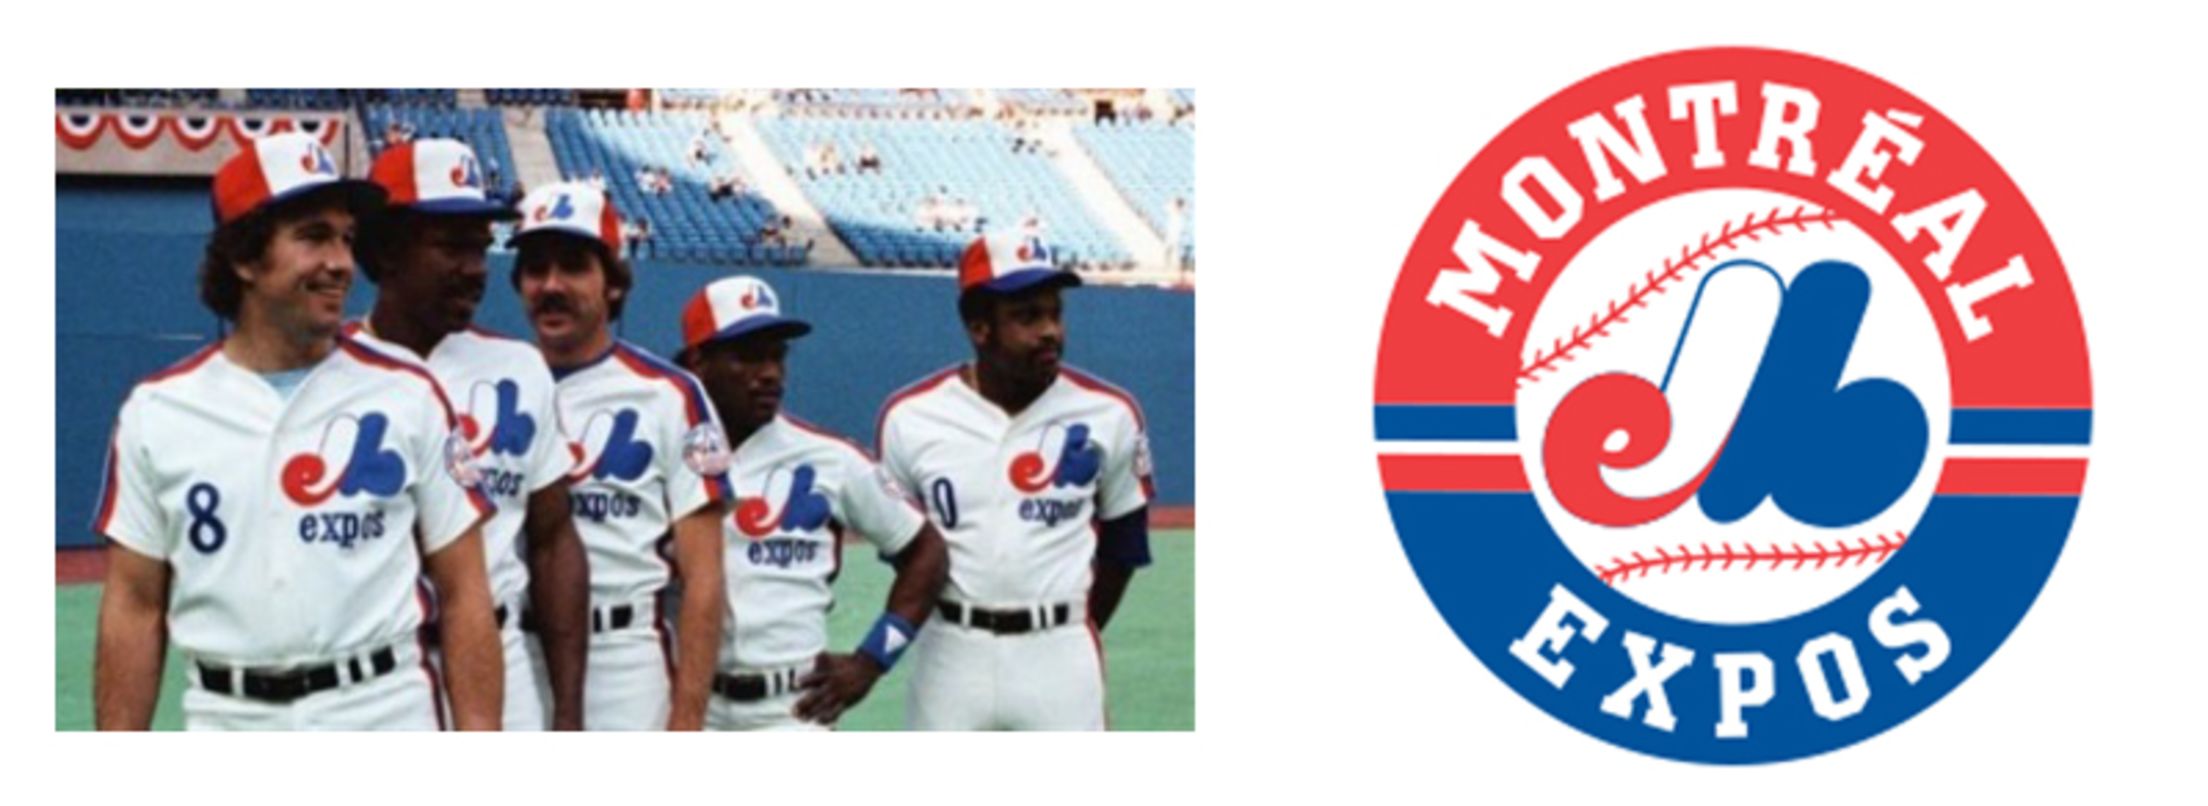 Washington Nationals to wear Montreal Expos uniforms on July 6th vs Kansas  City Royals - Federal Baseball